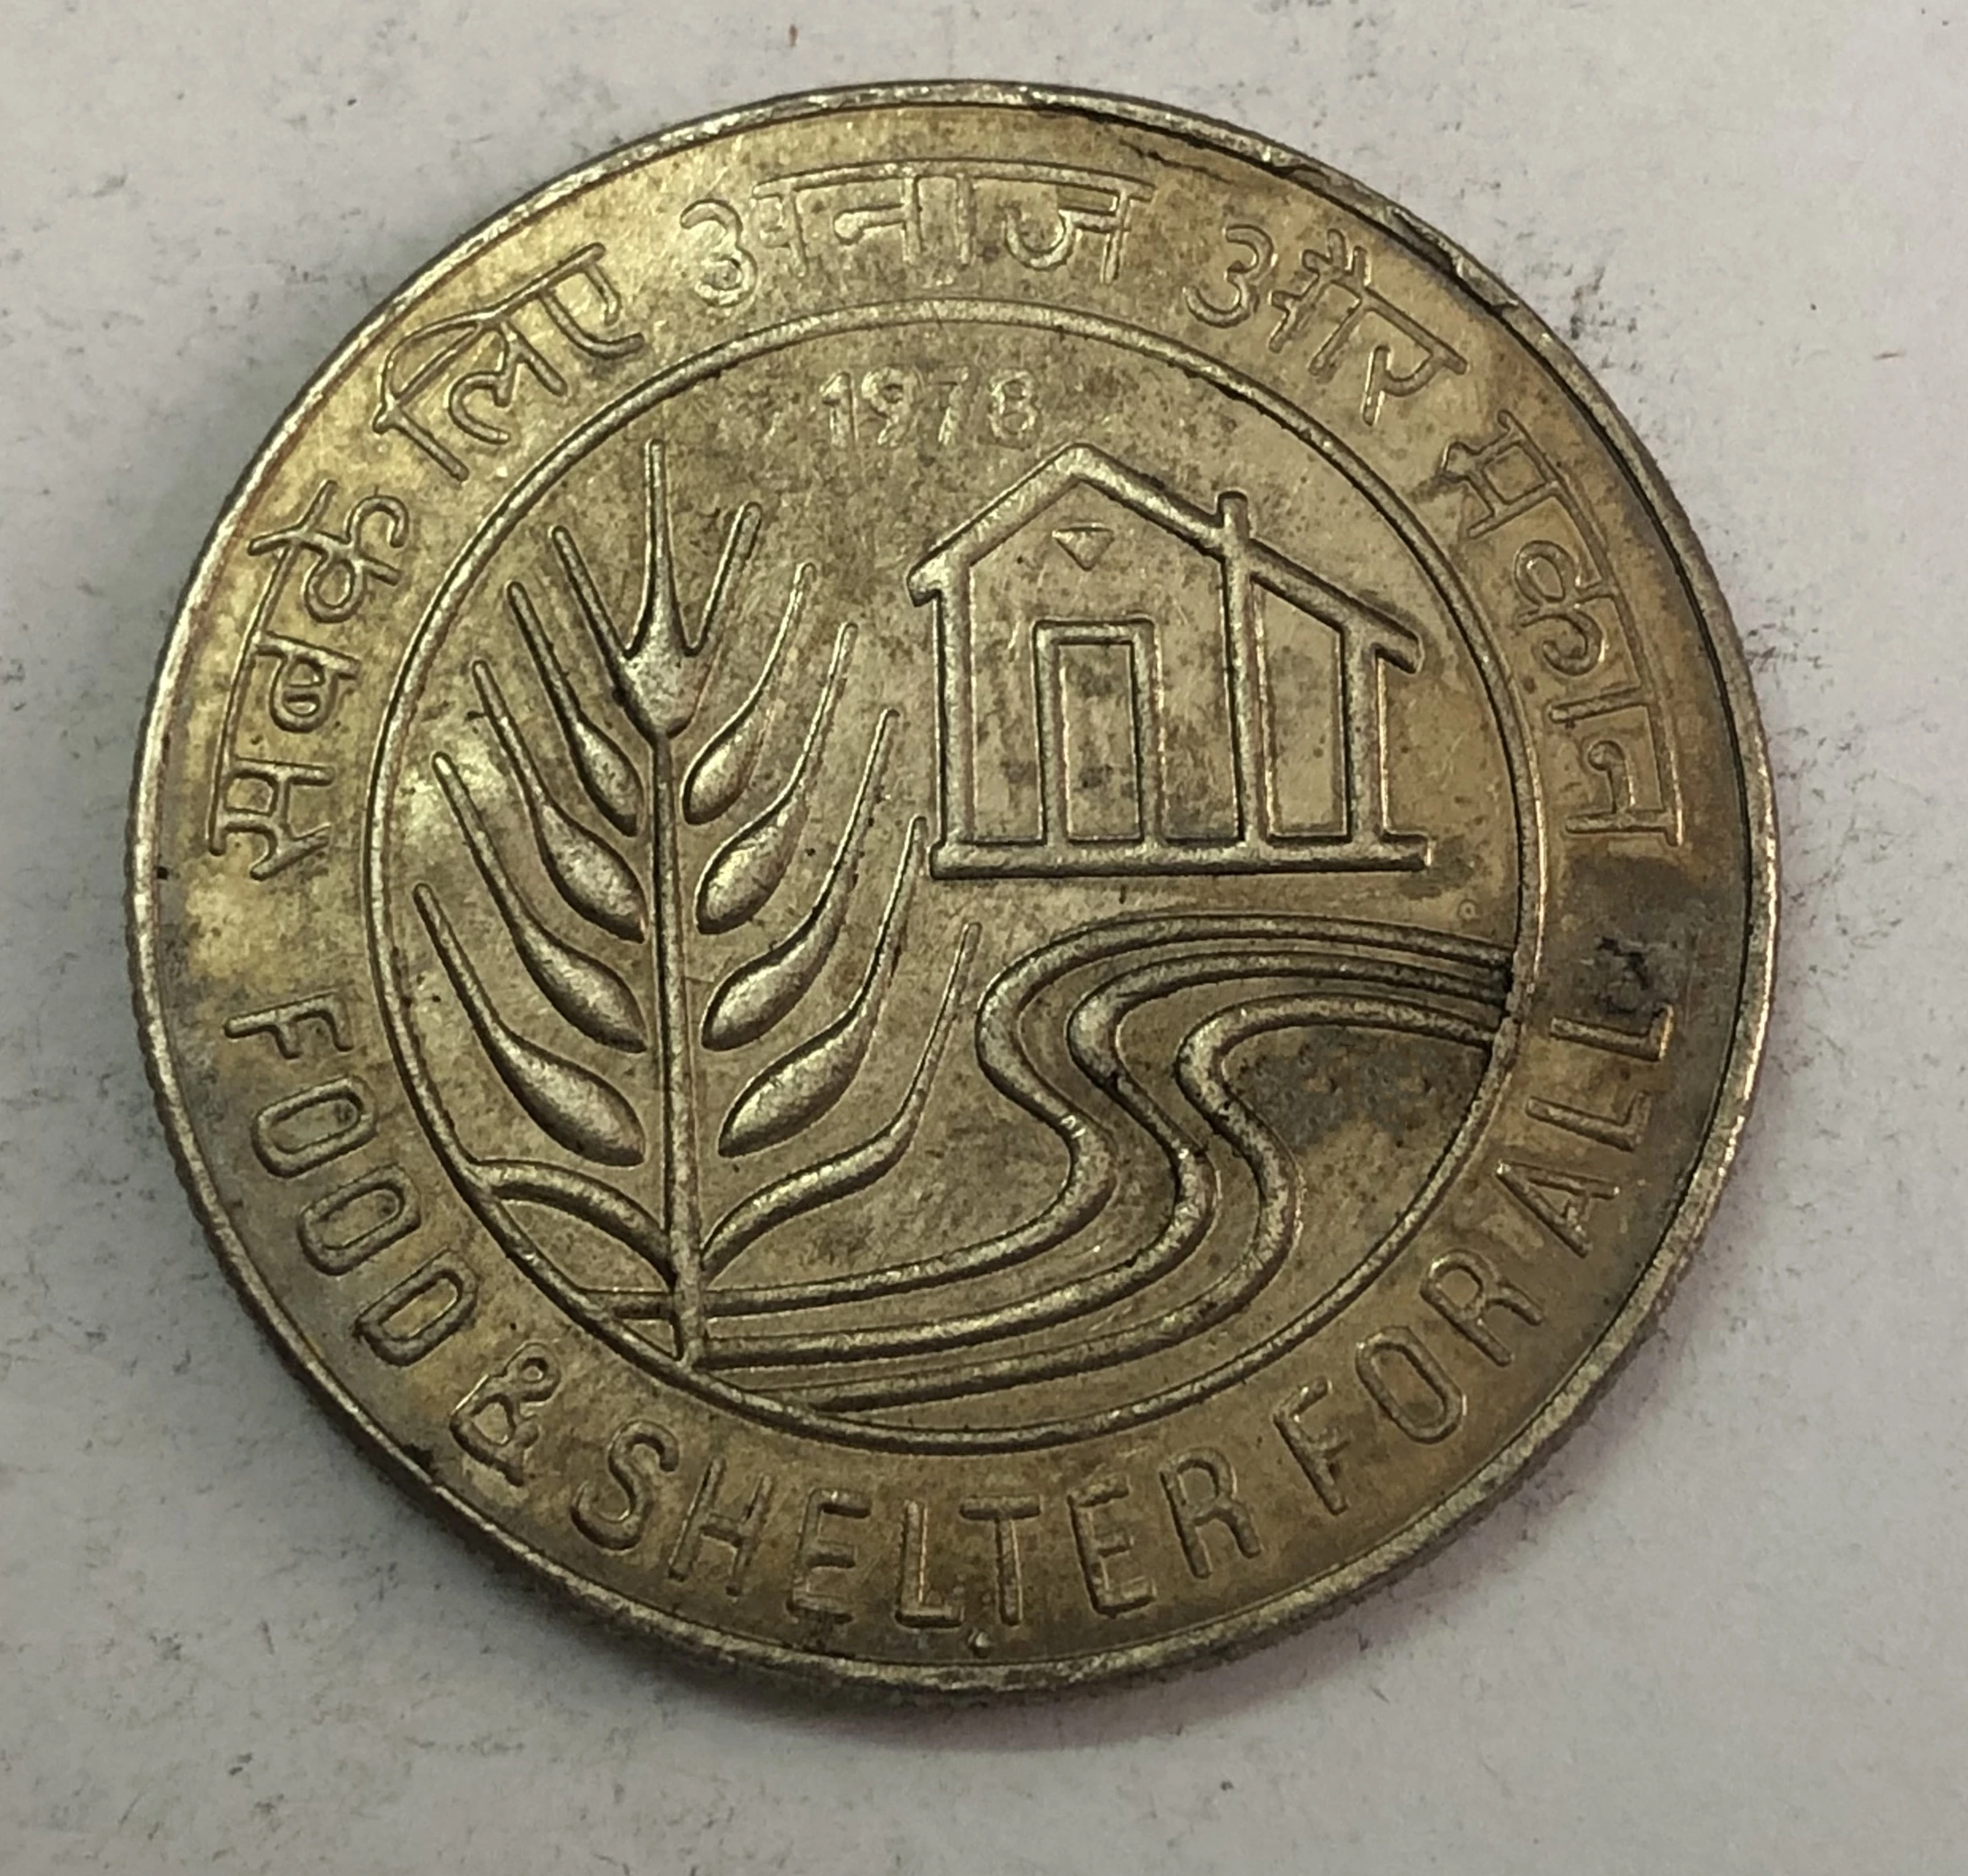 1978 Индия-Республика 10 рупий FAO медно-никелевая монета мумбайская мята